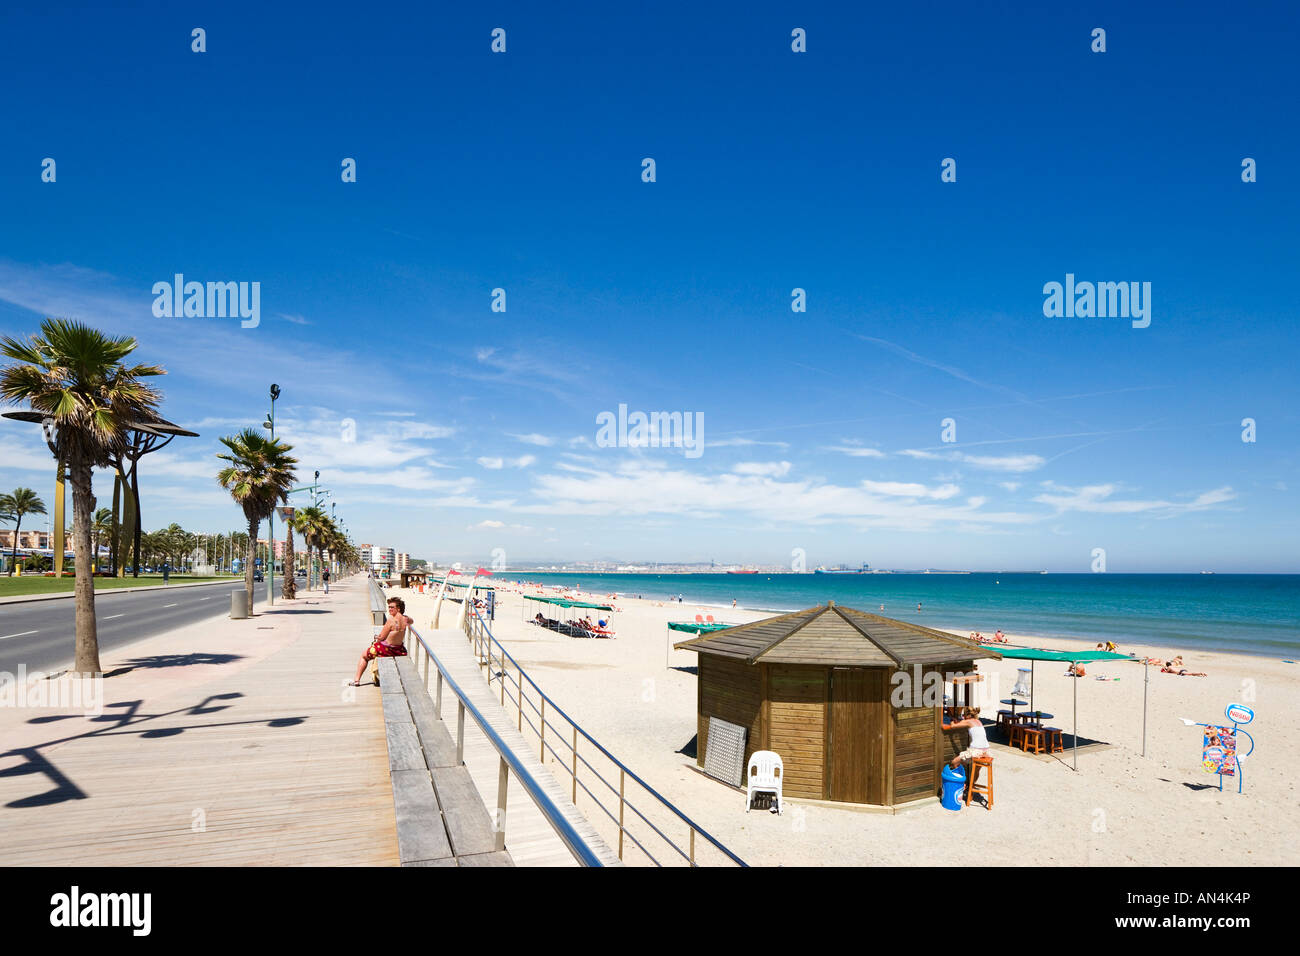 Promenade, plage et bar de plage, La Pineda, près de Salou, Costa Dorada, Espagne Banque D'Images